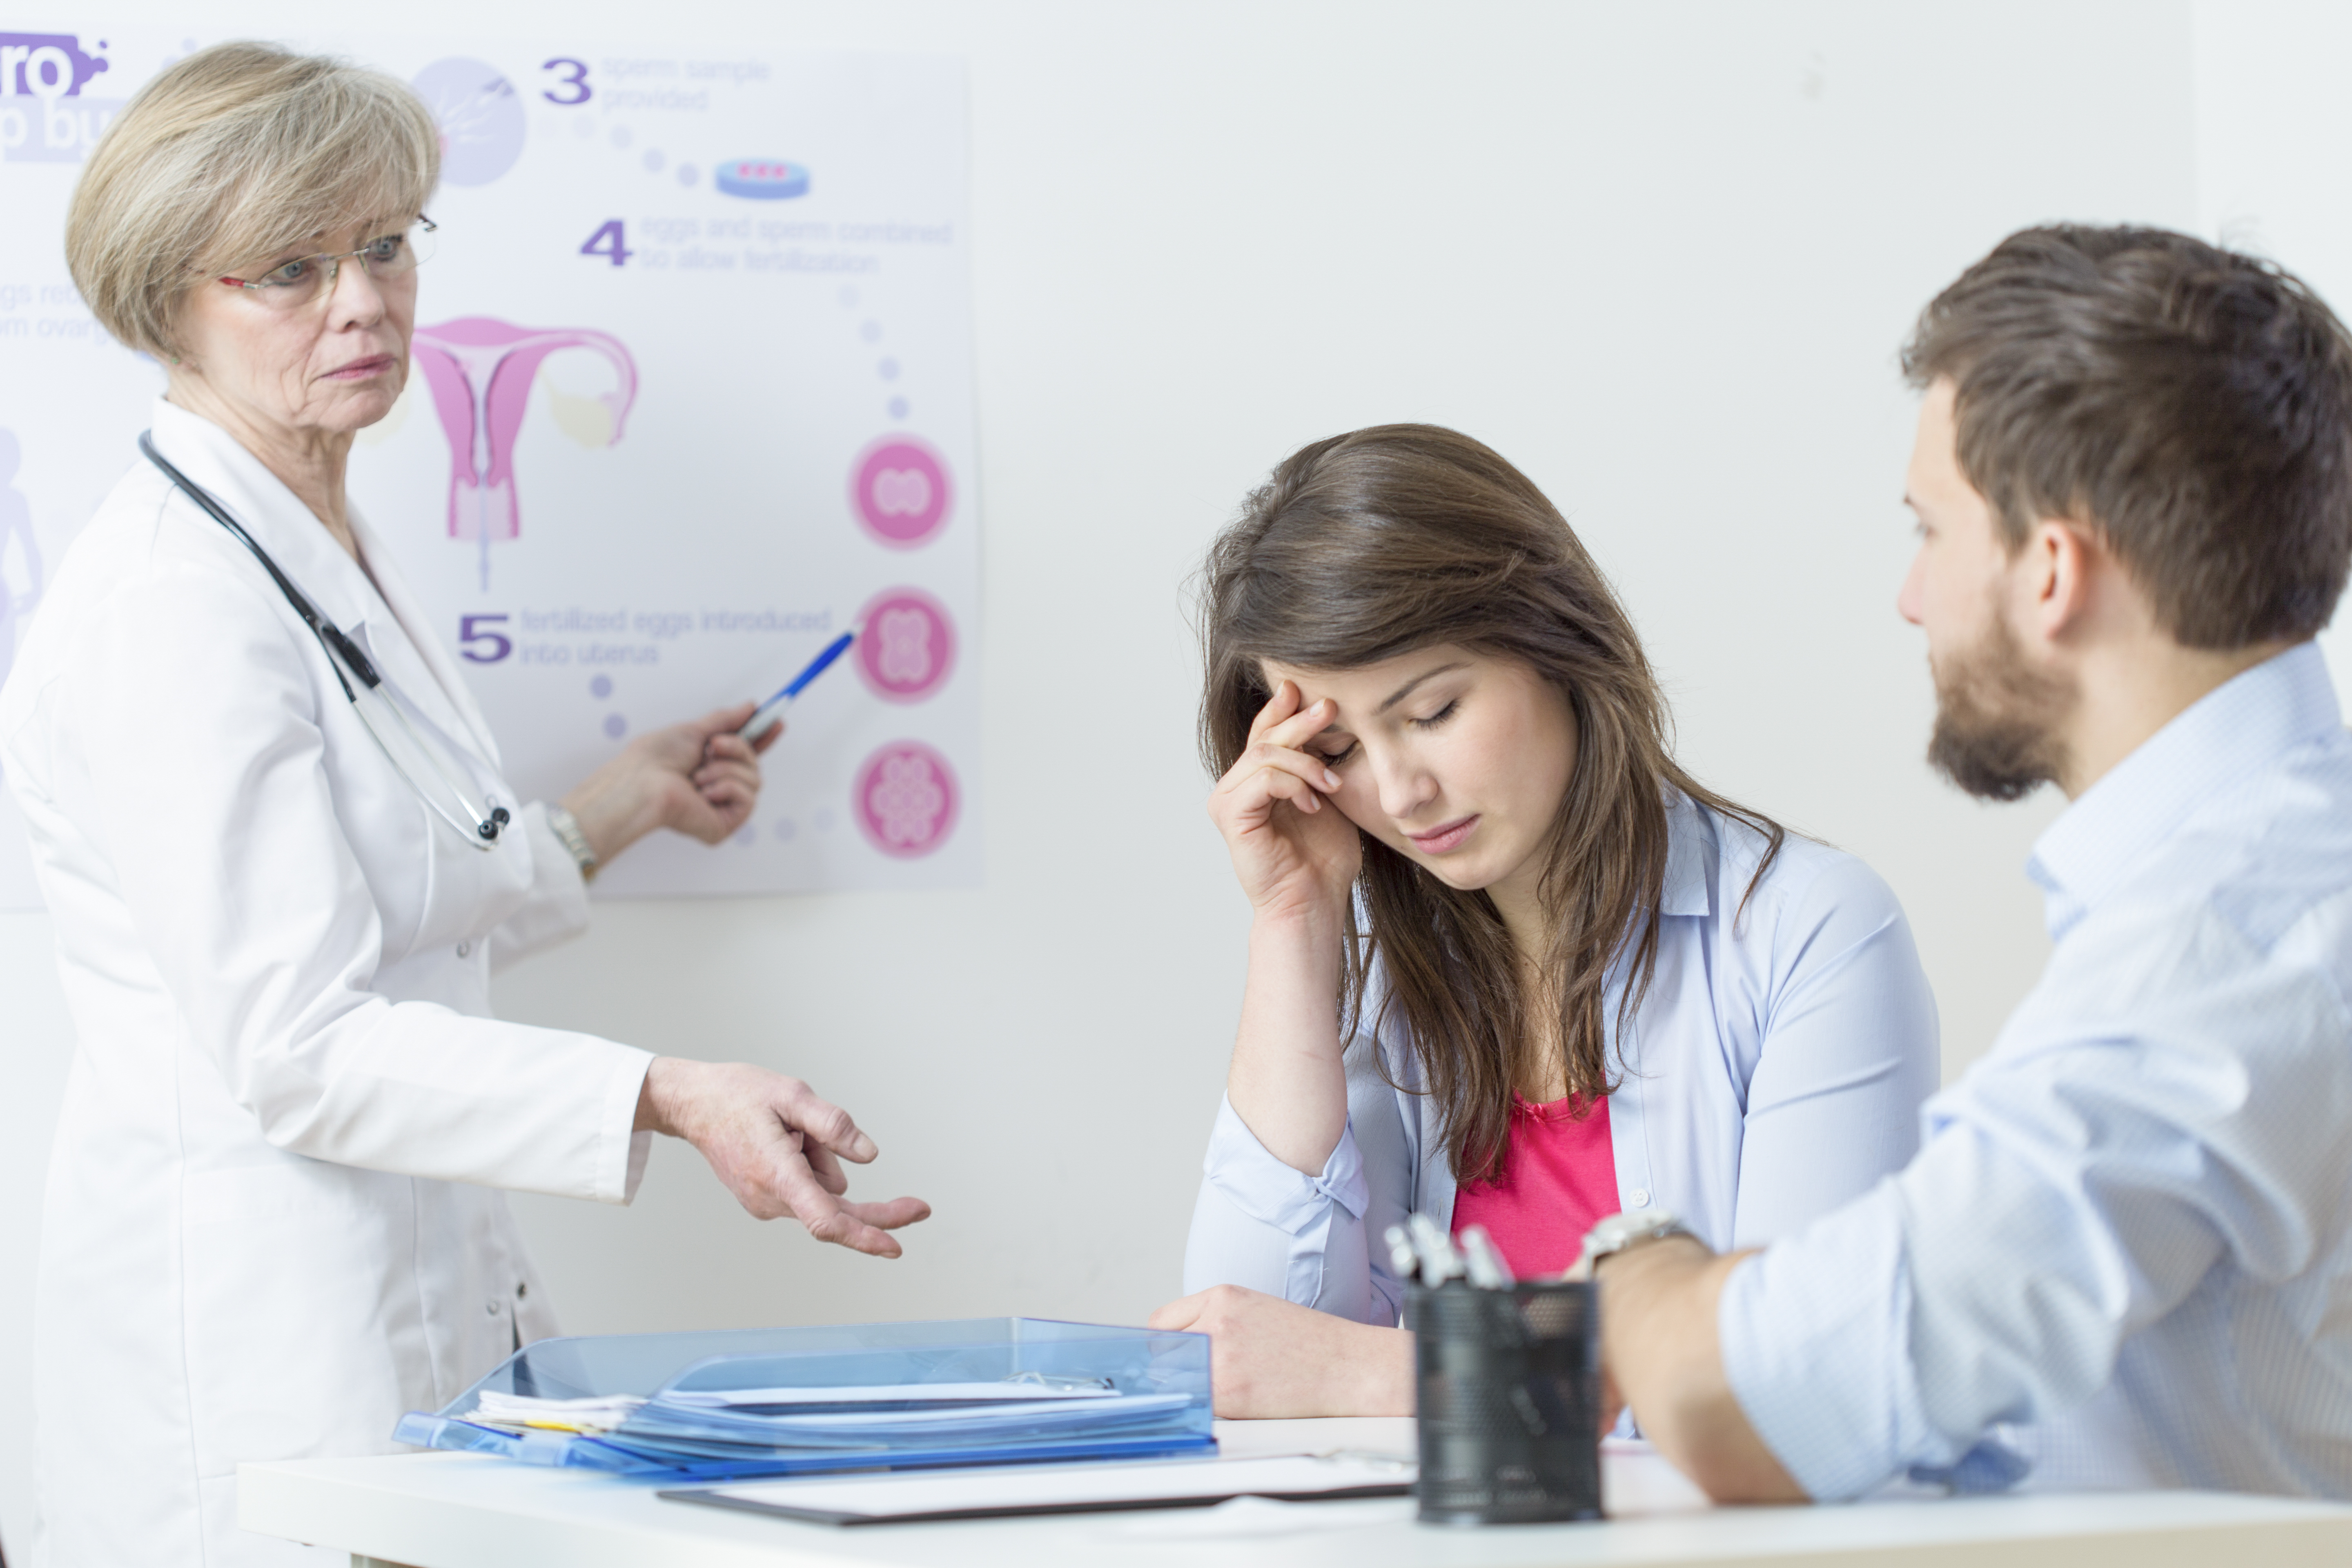 Petefészekrák: az endometriózis növelheti a kockázatot | Rákgyógyítás